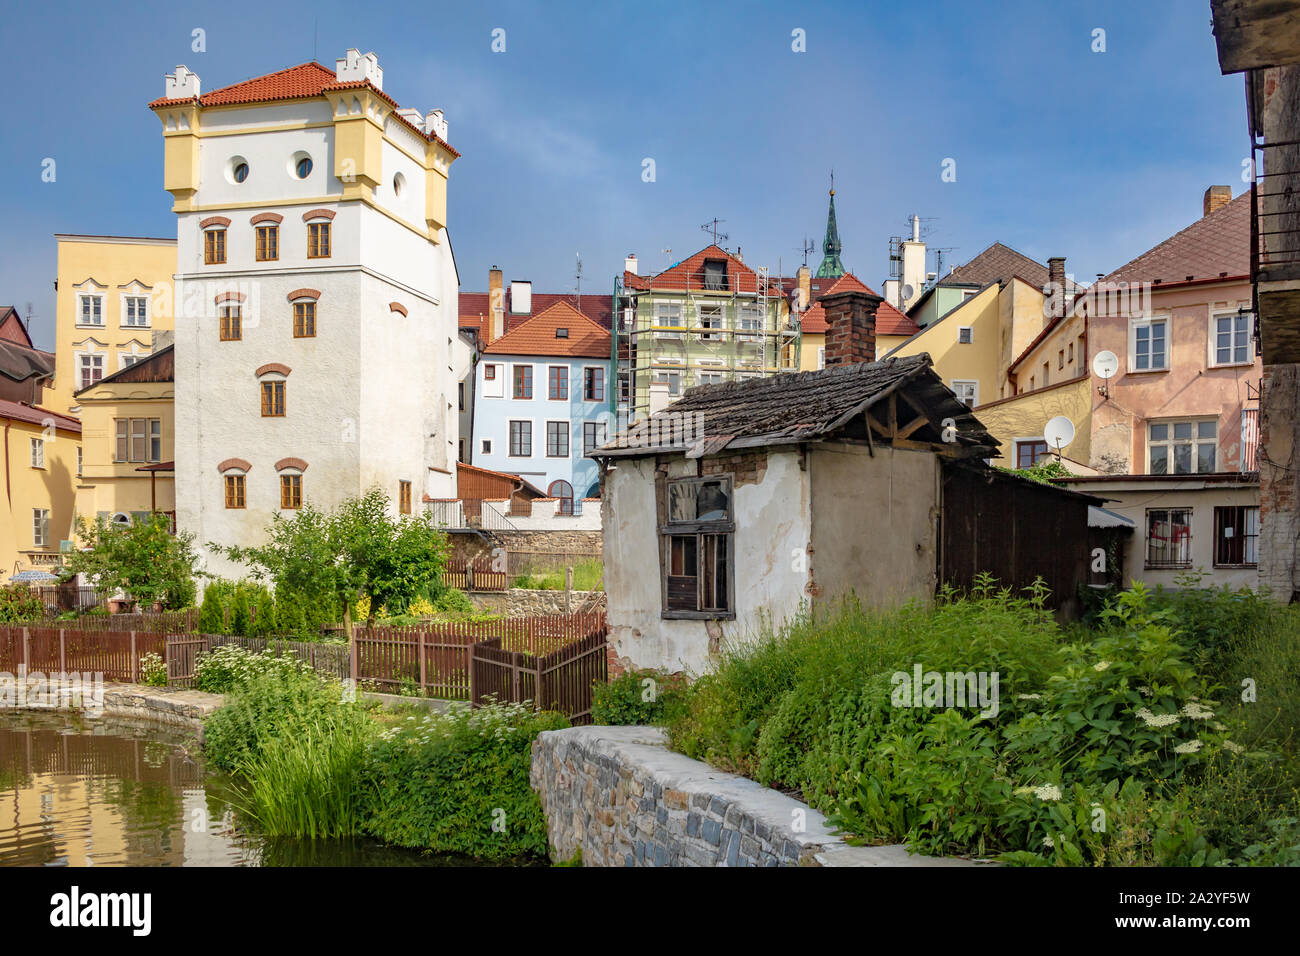 Vista sulla città di Jindrichuv Hradec, è una città della Repubblica ceca nella regione a sud della Boemia. Vista della città vecchia. Foto Stock